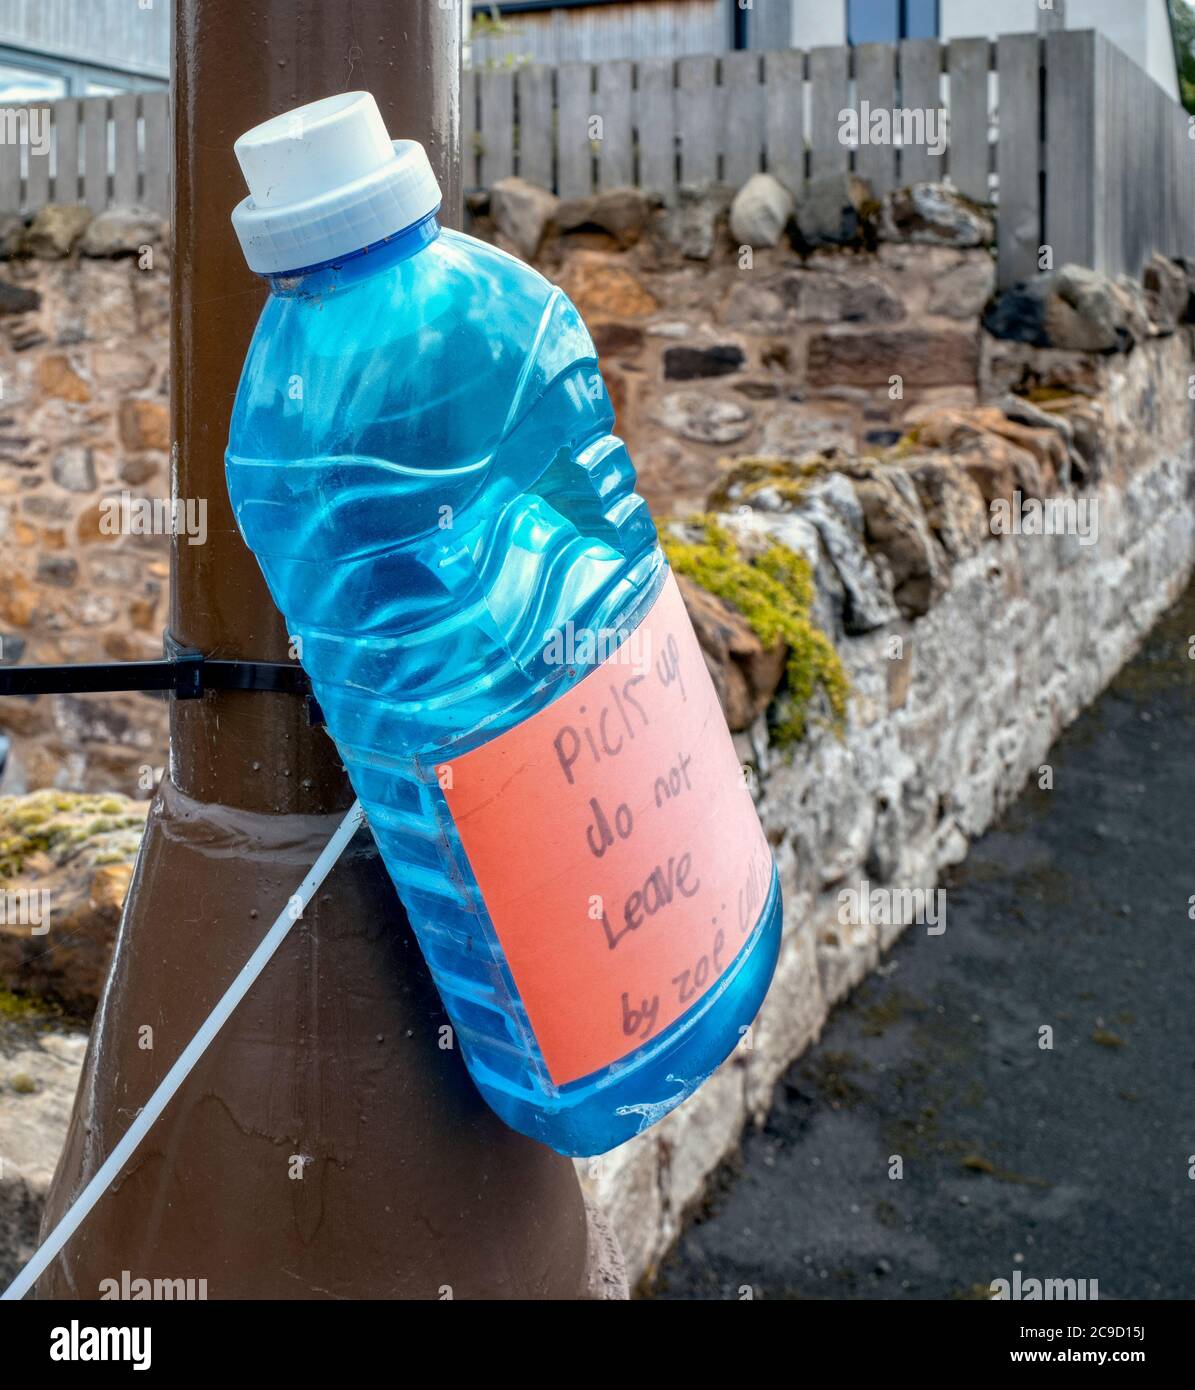 Nuevo aviso de basura de una botella de plástico descartada adherida a un poste de cordero. Foto de stock